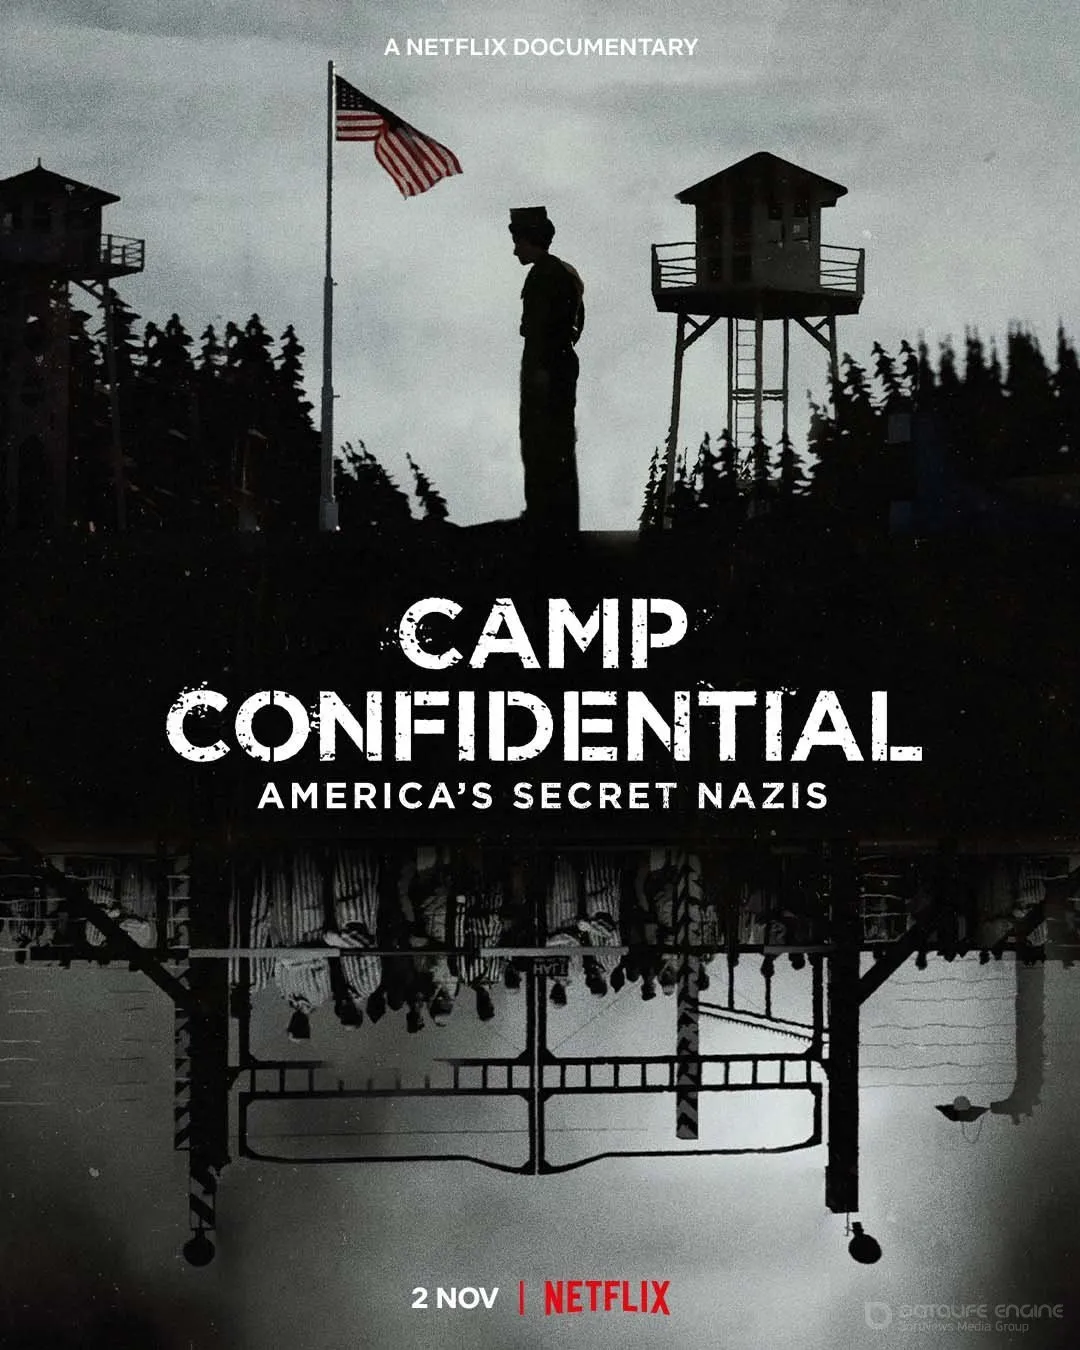 Постер к мультфильму "Секретный лагерь: пленные нацисты в Америке"